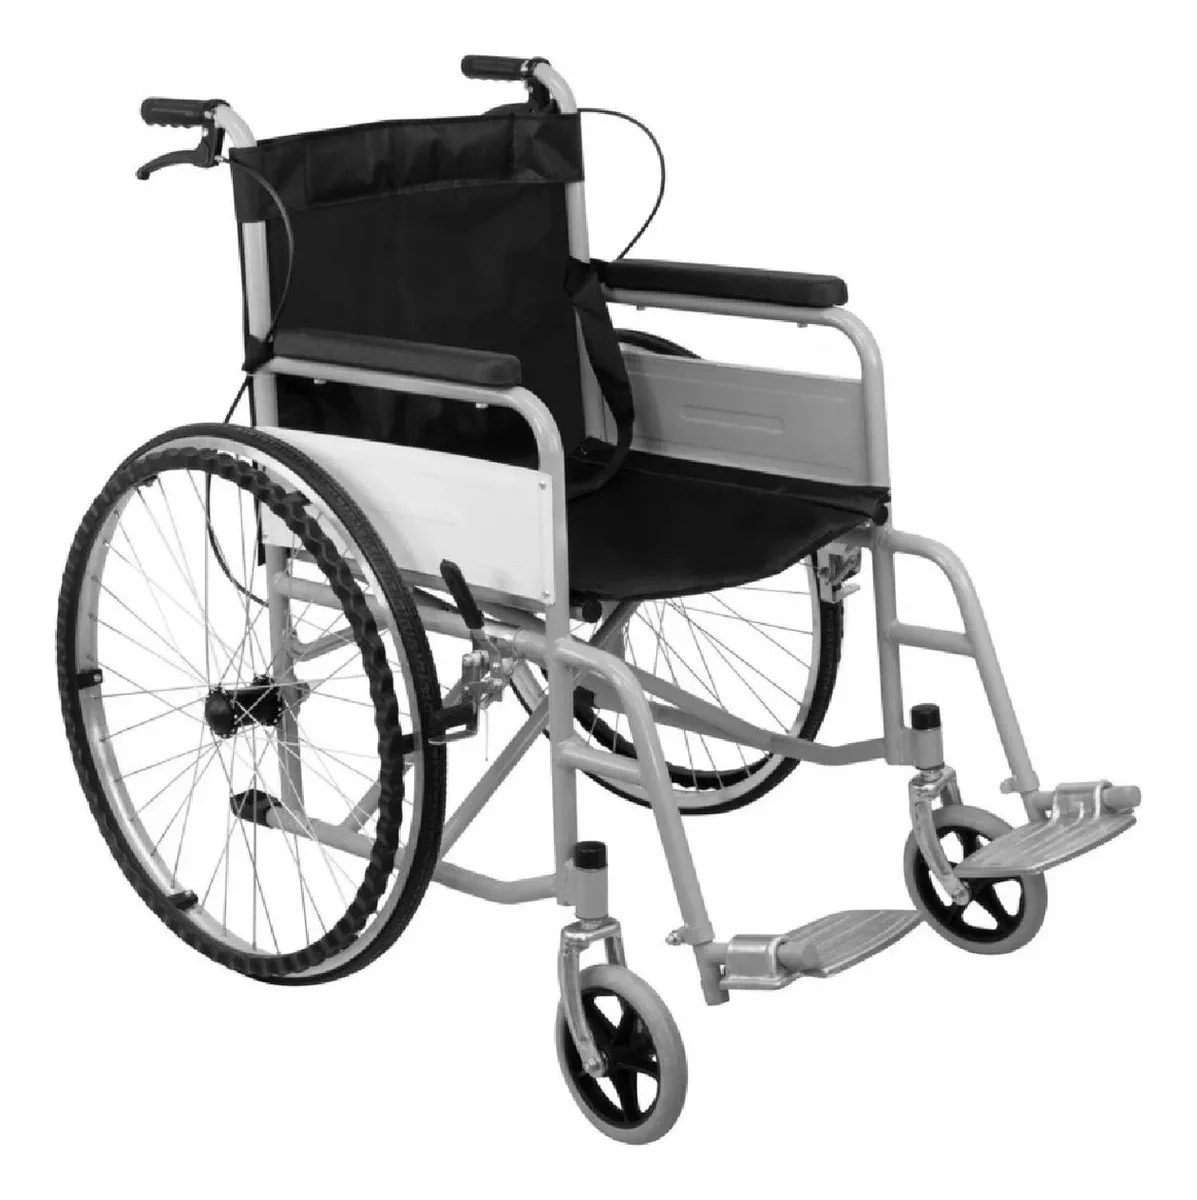 Primera imagen para búsqueda de silla de ruedas